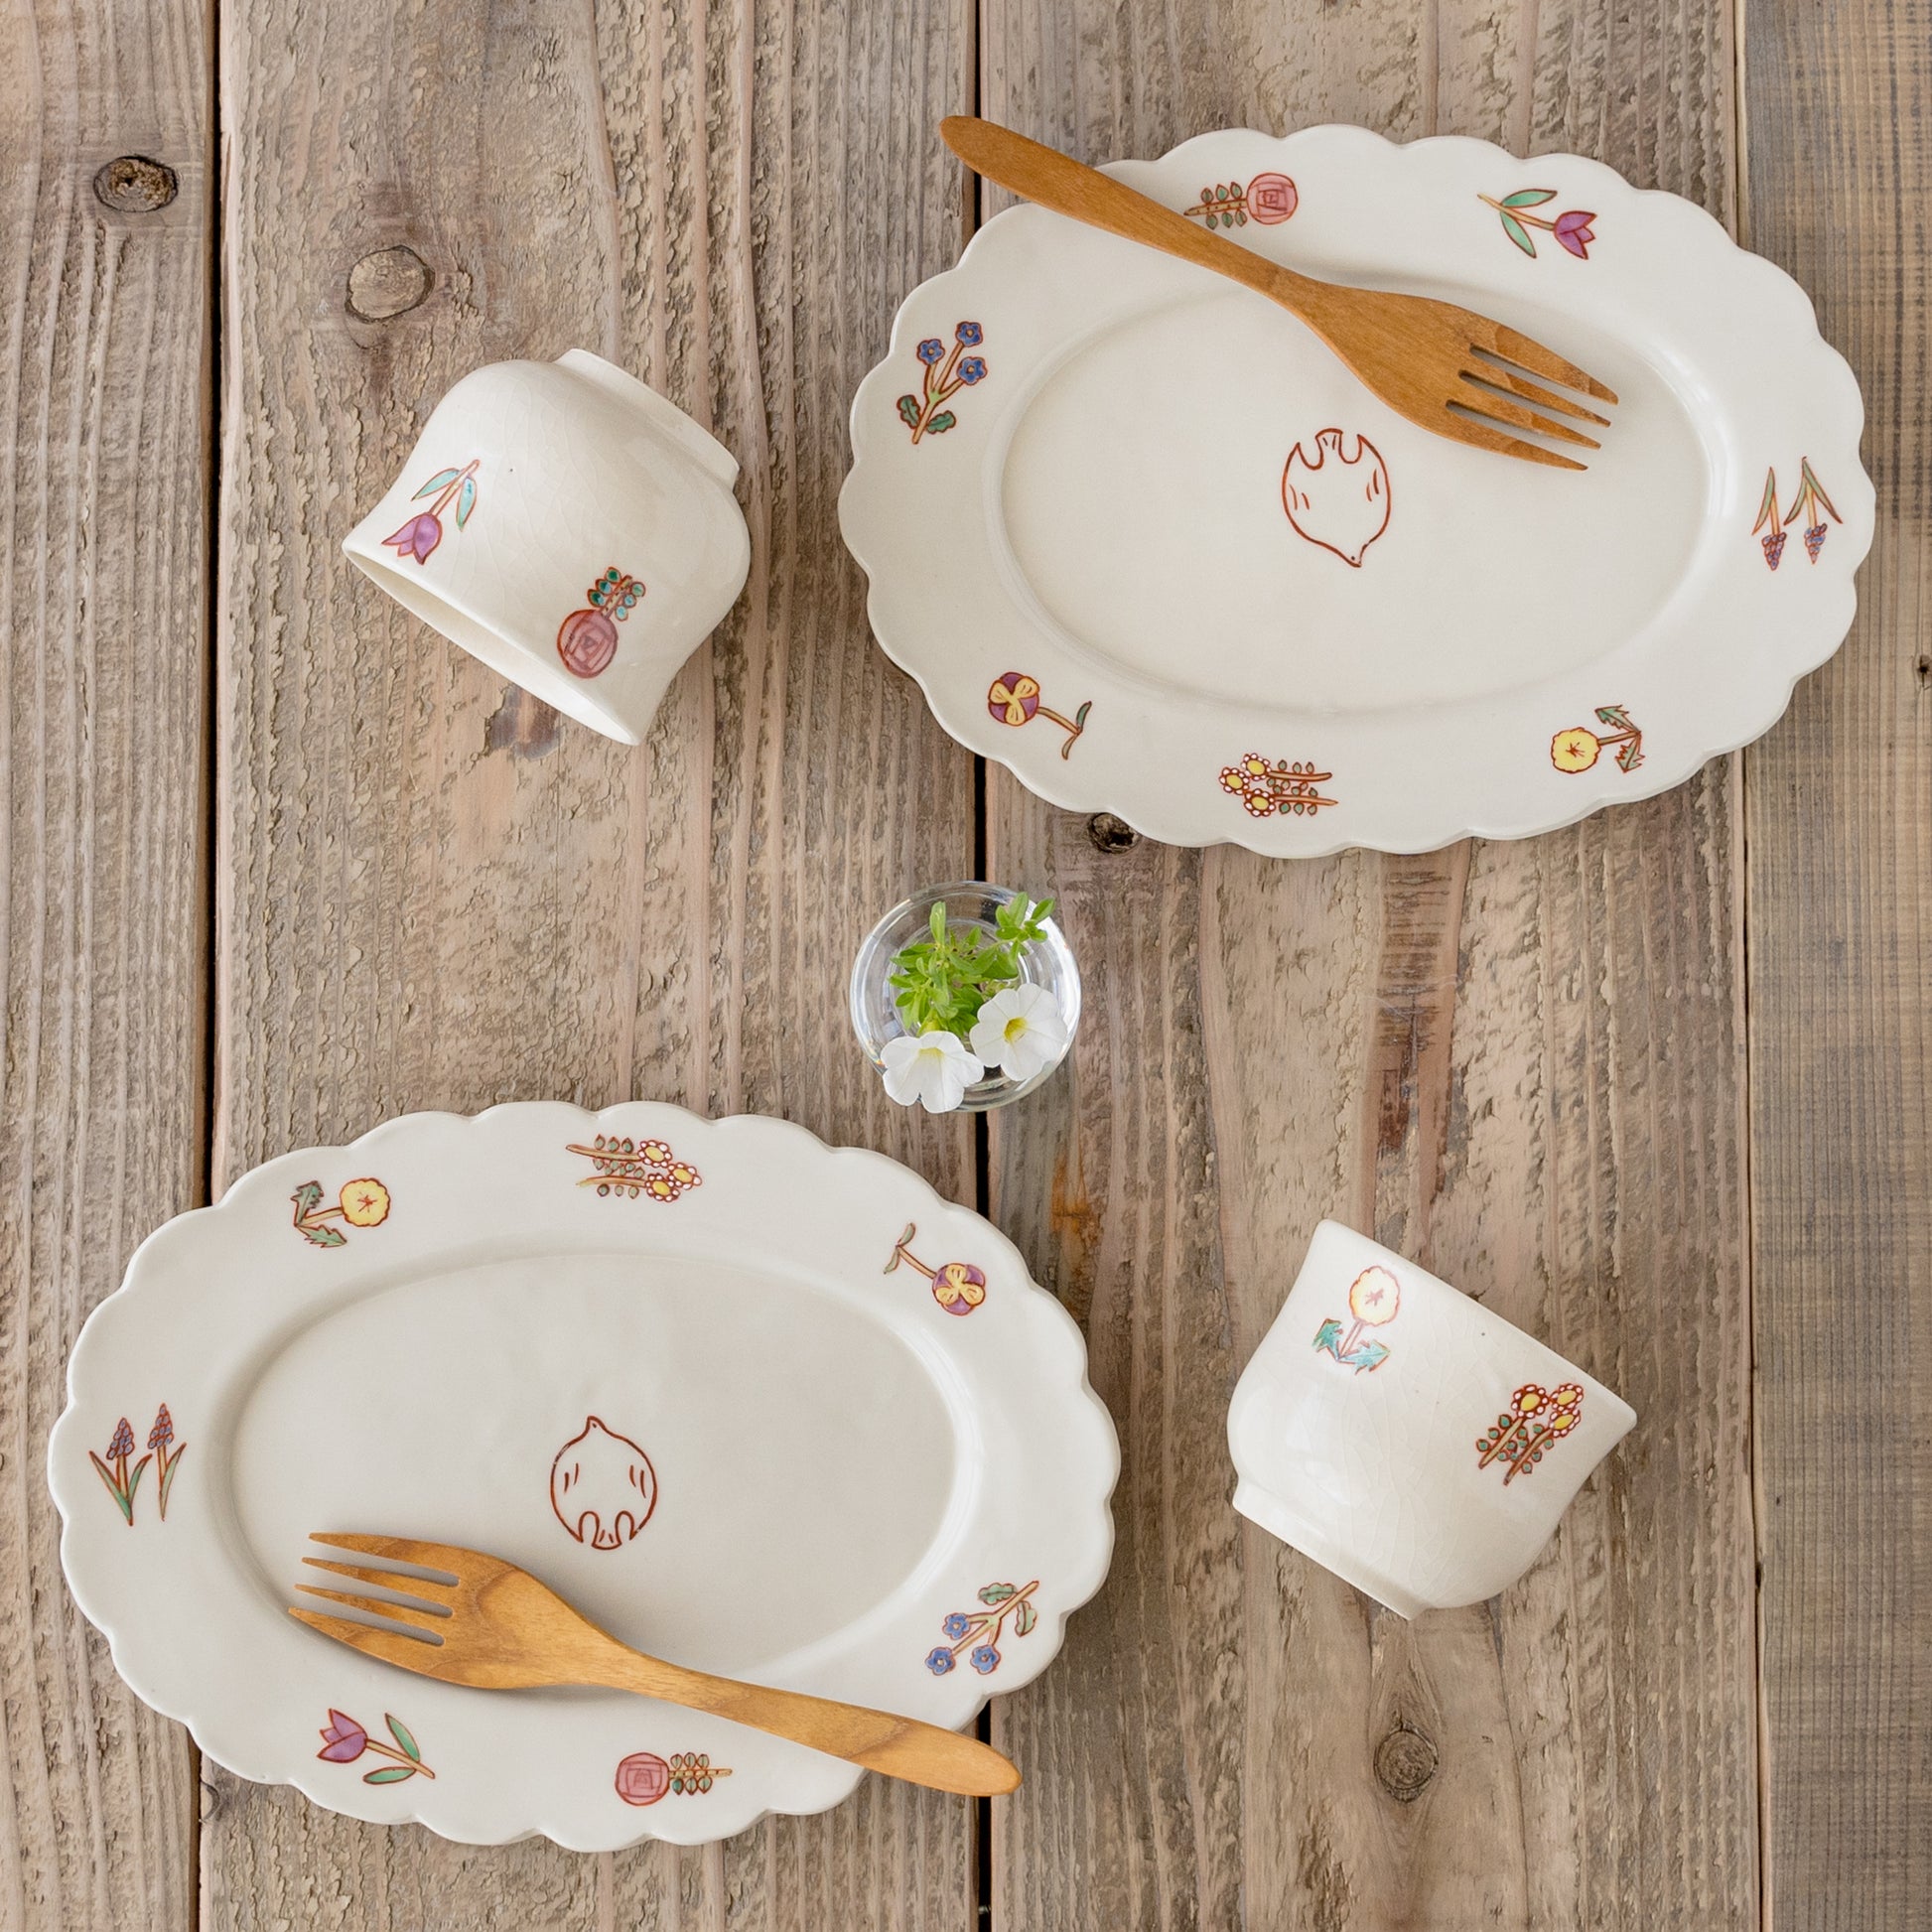 食卓がもっと可愛く楽しくなる長浜由起子さんの小花絵付フリーカップとオーバル皿